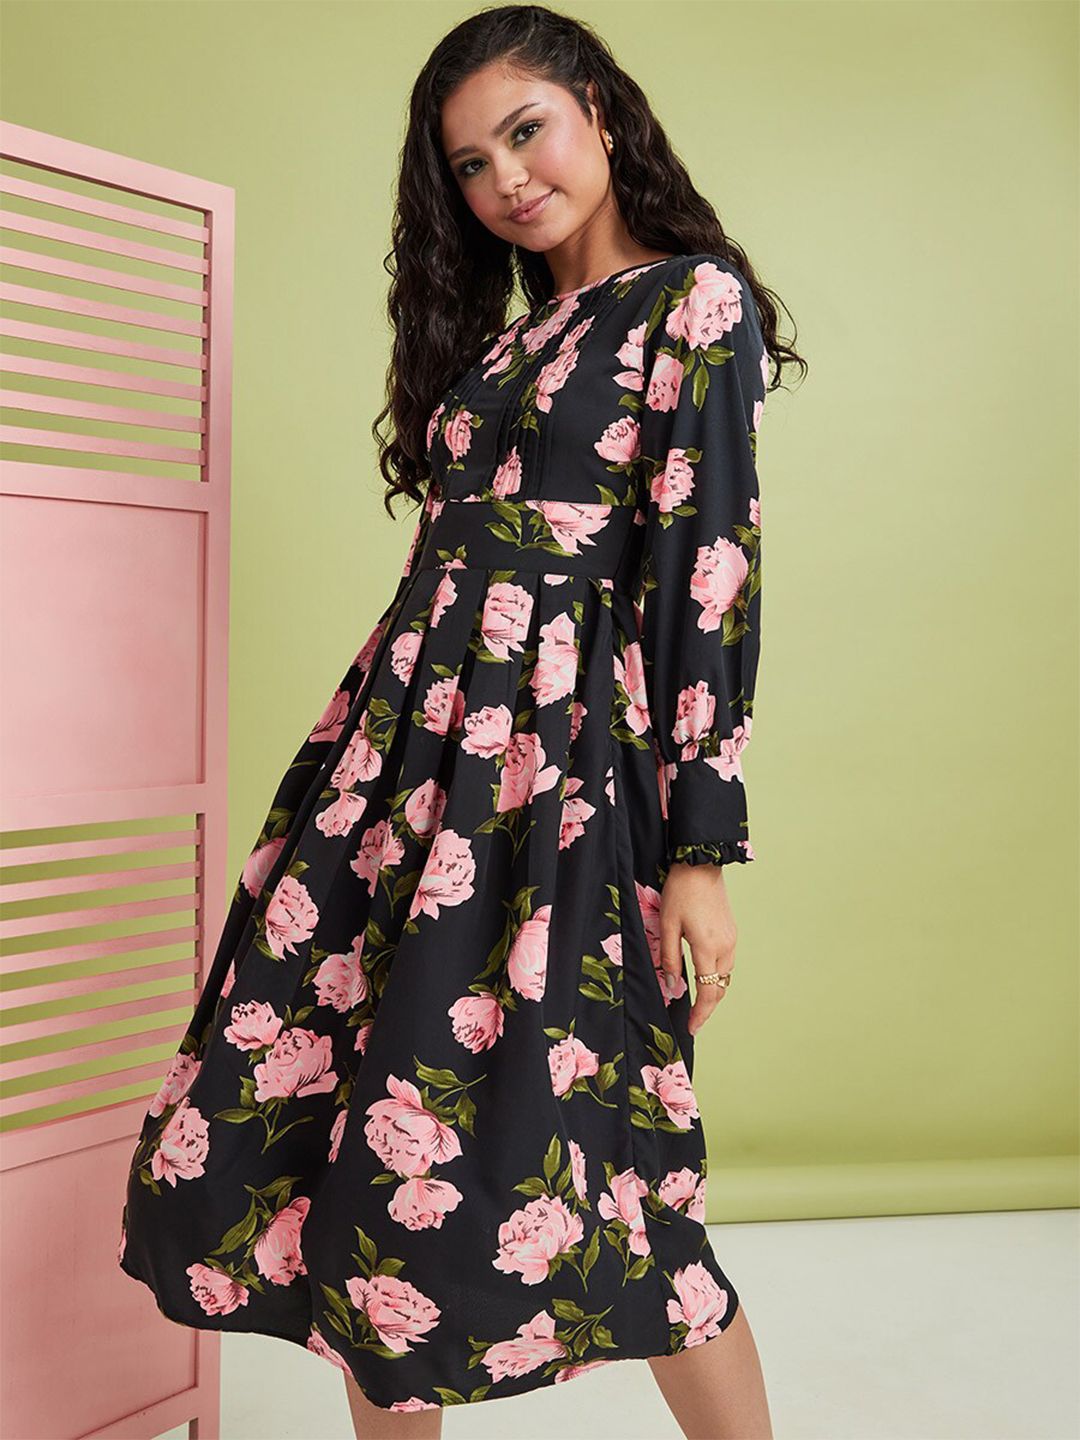 Styli Black Floral Midi Dress Price in India